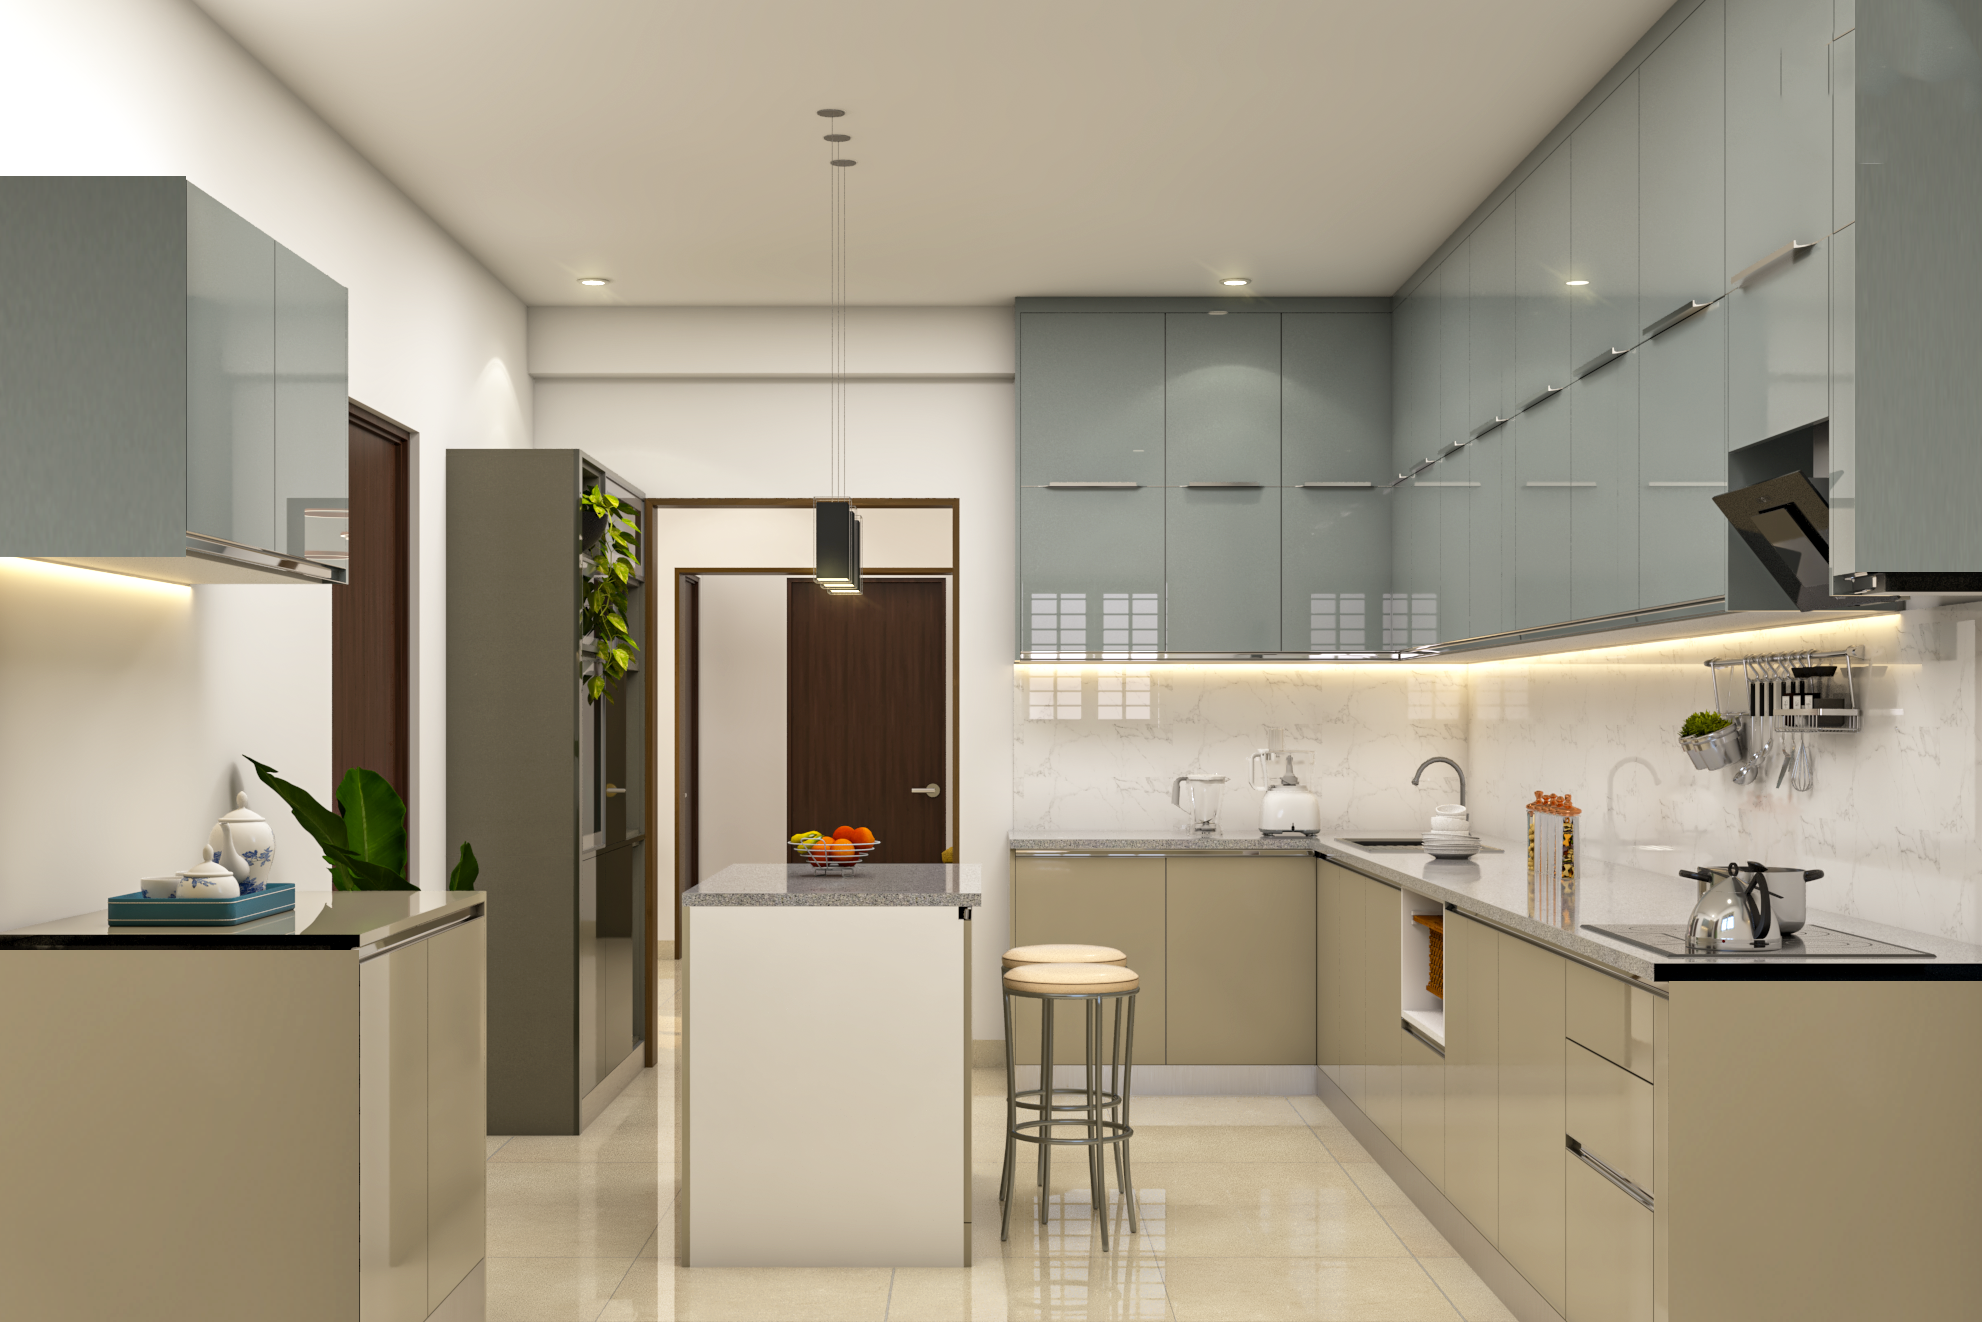 Modular Modern Kitchen Design With Breakfast Counter